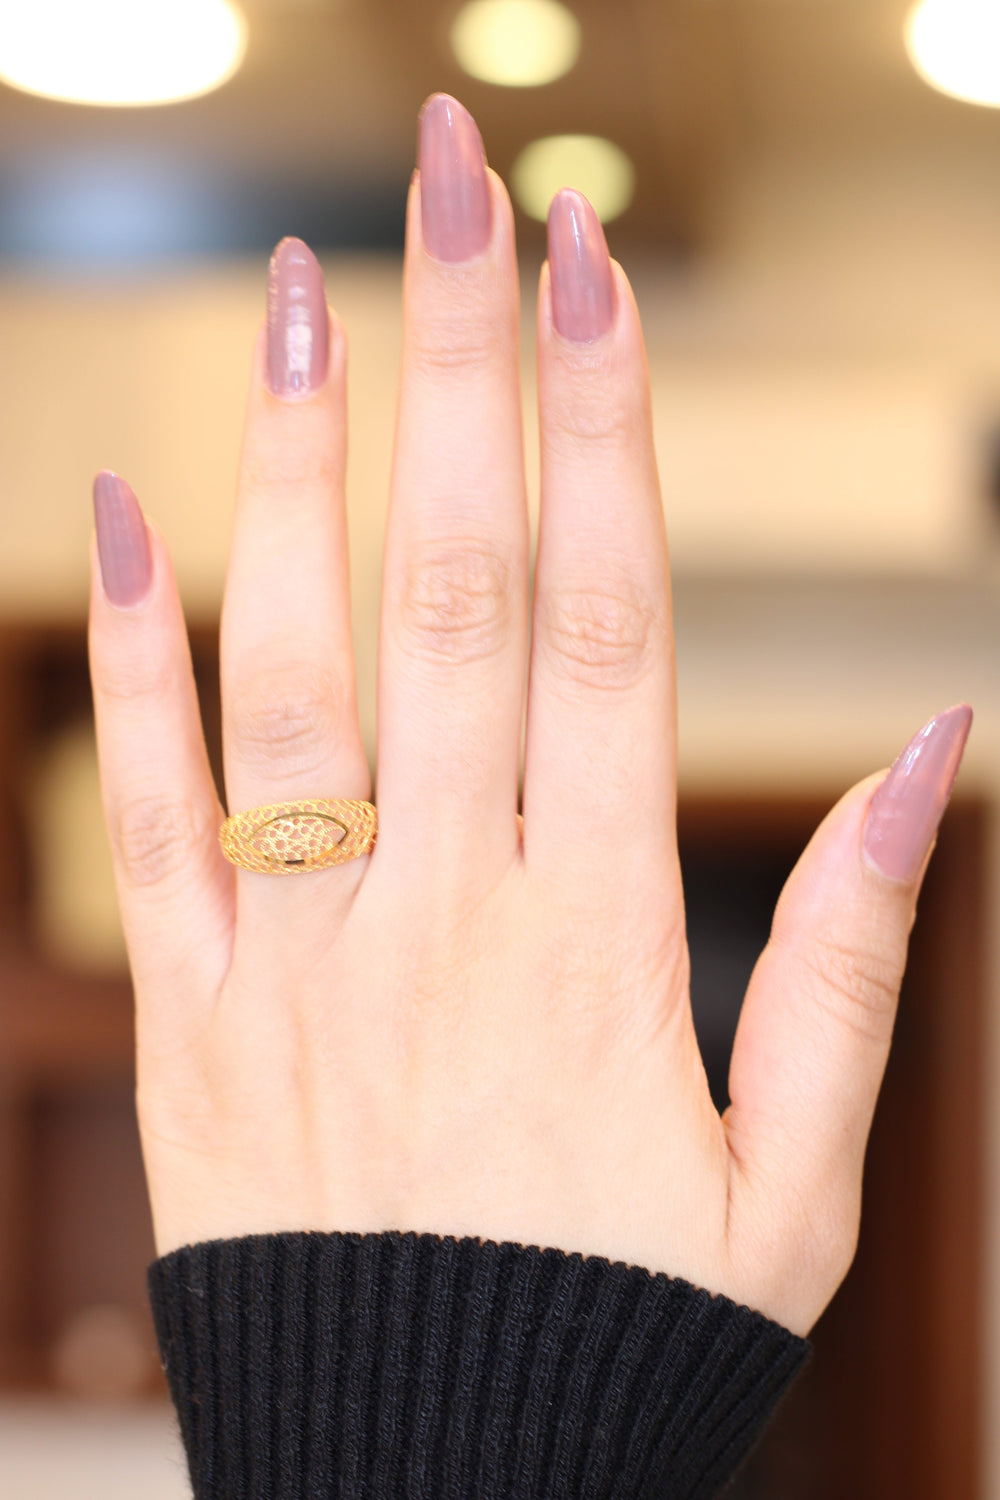 21K Gold Kuwaiti Ring by Saeed Jewelry - Image 2